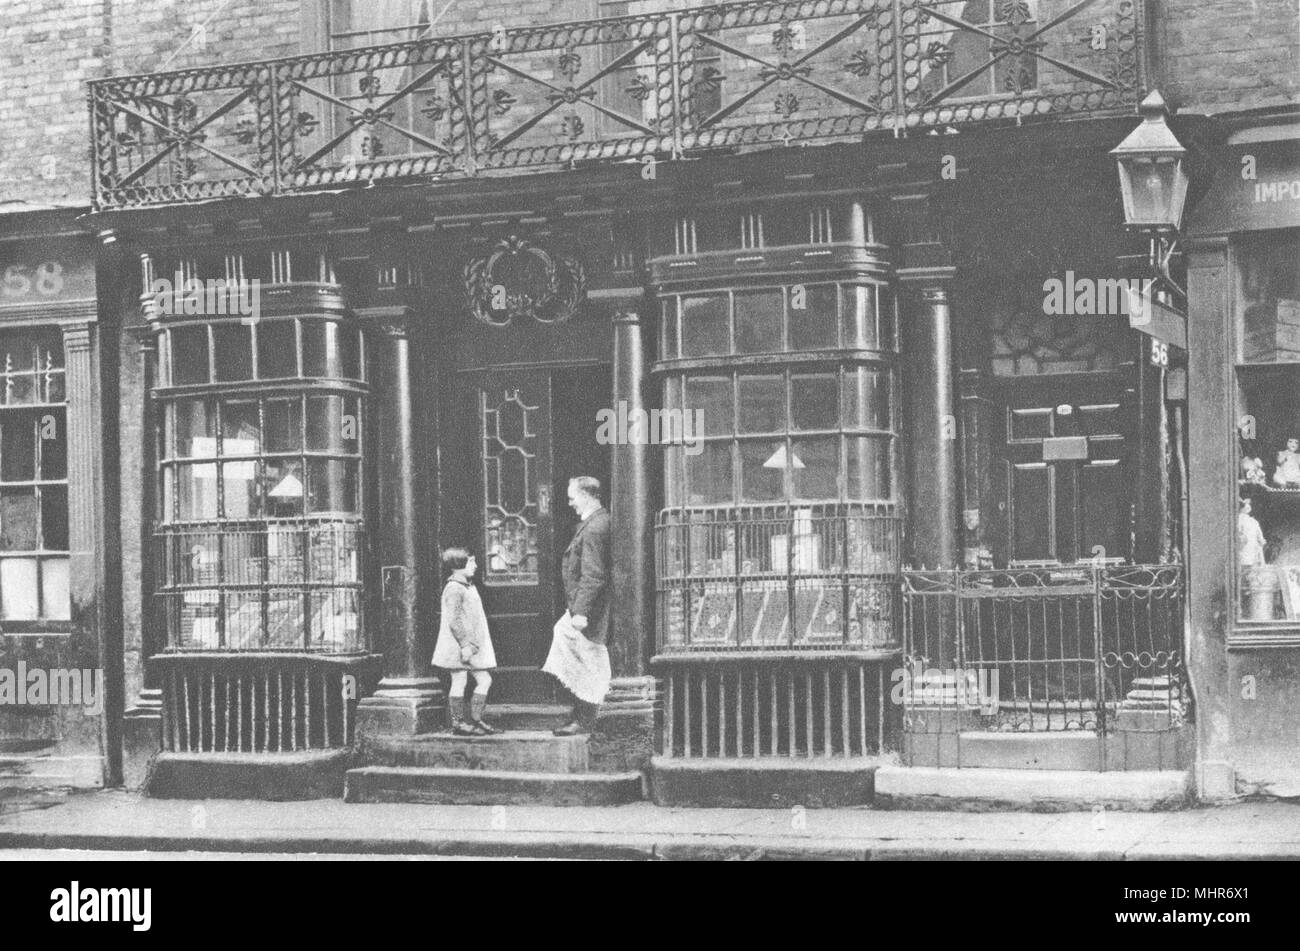 LONDON. 56 Artillery Lane. Altmodische shop vorne einmal allgemein in der Stadt 1926 Stockfoto